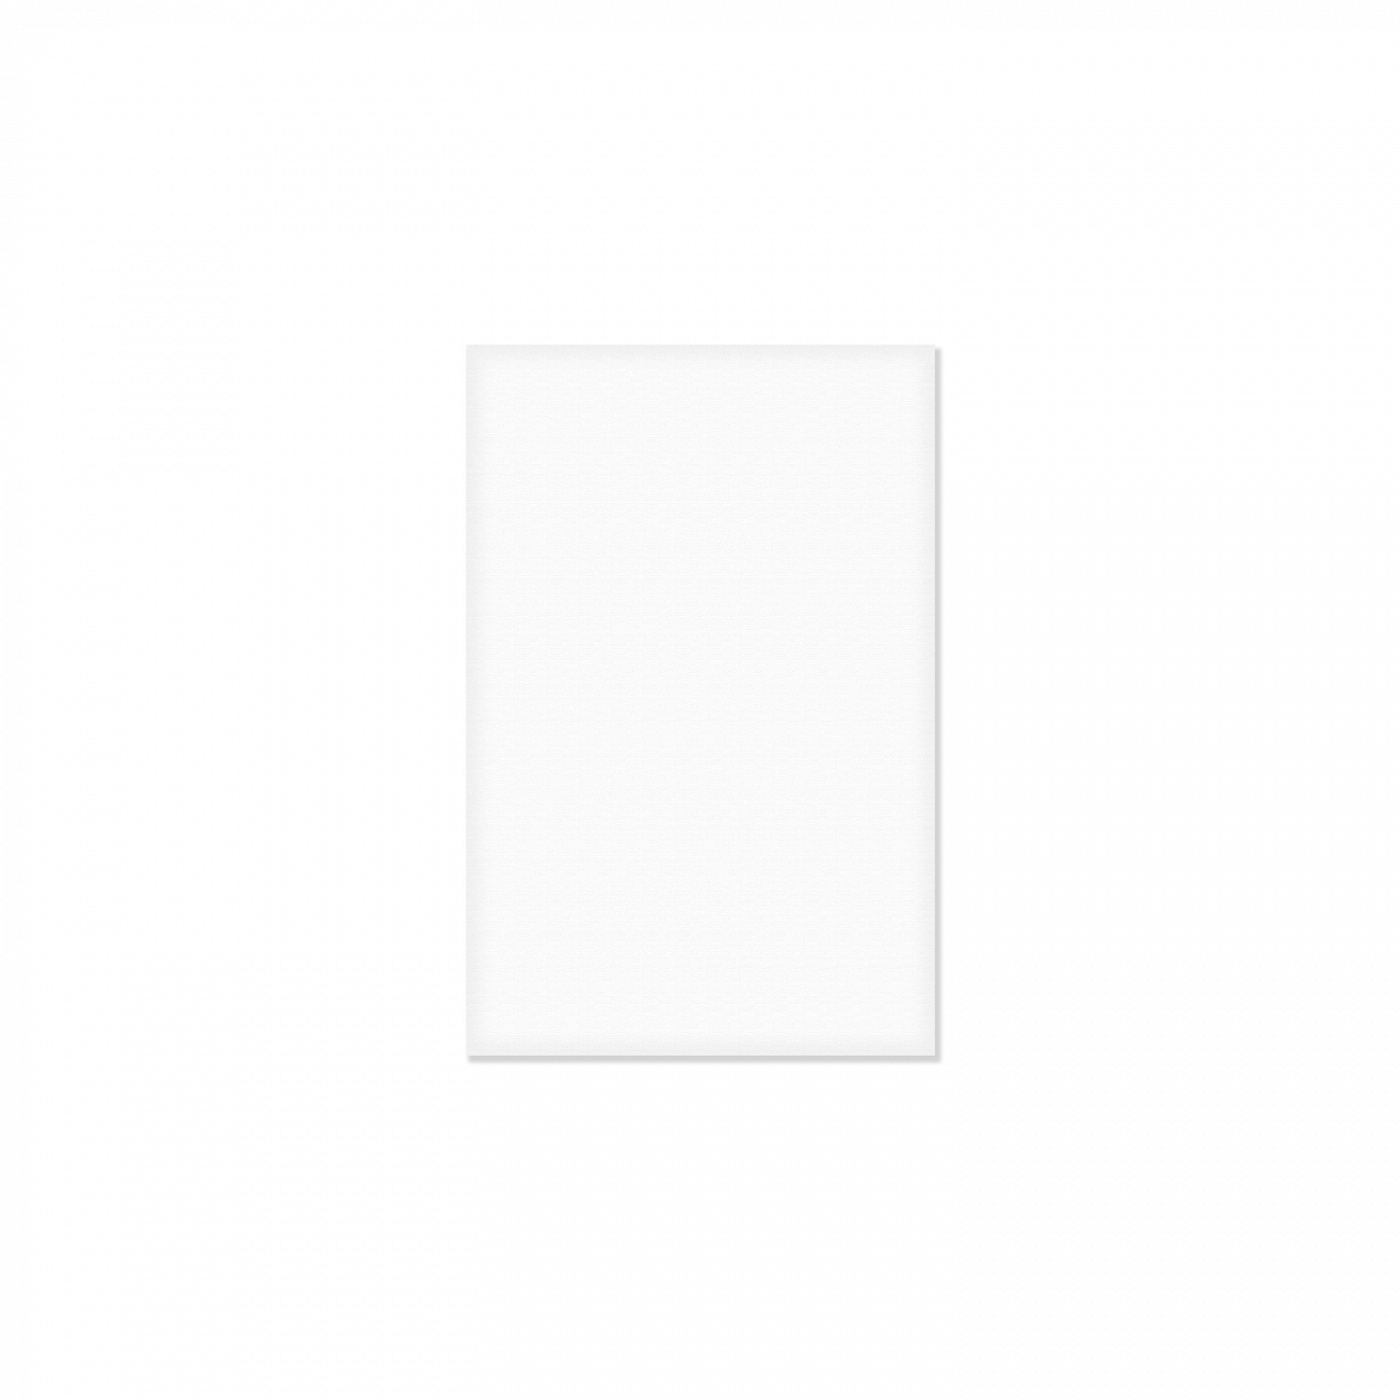 Холст грунтованный на ДВП Альбатрос 30х40 см акриловый грунт, белый пенокартон белый 30х40 см 3 мм